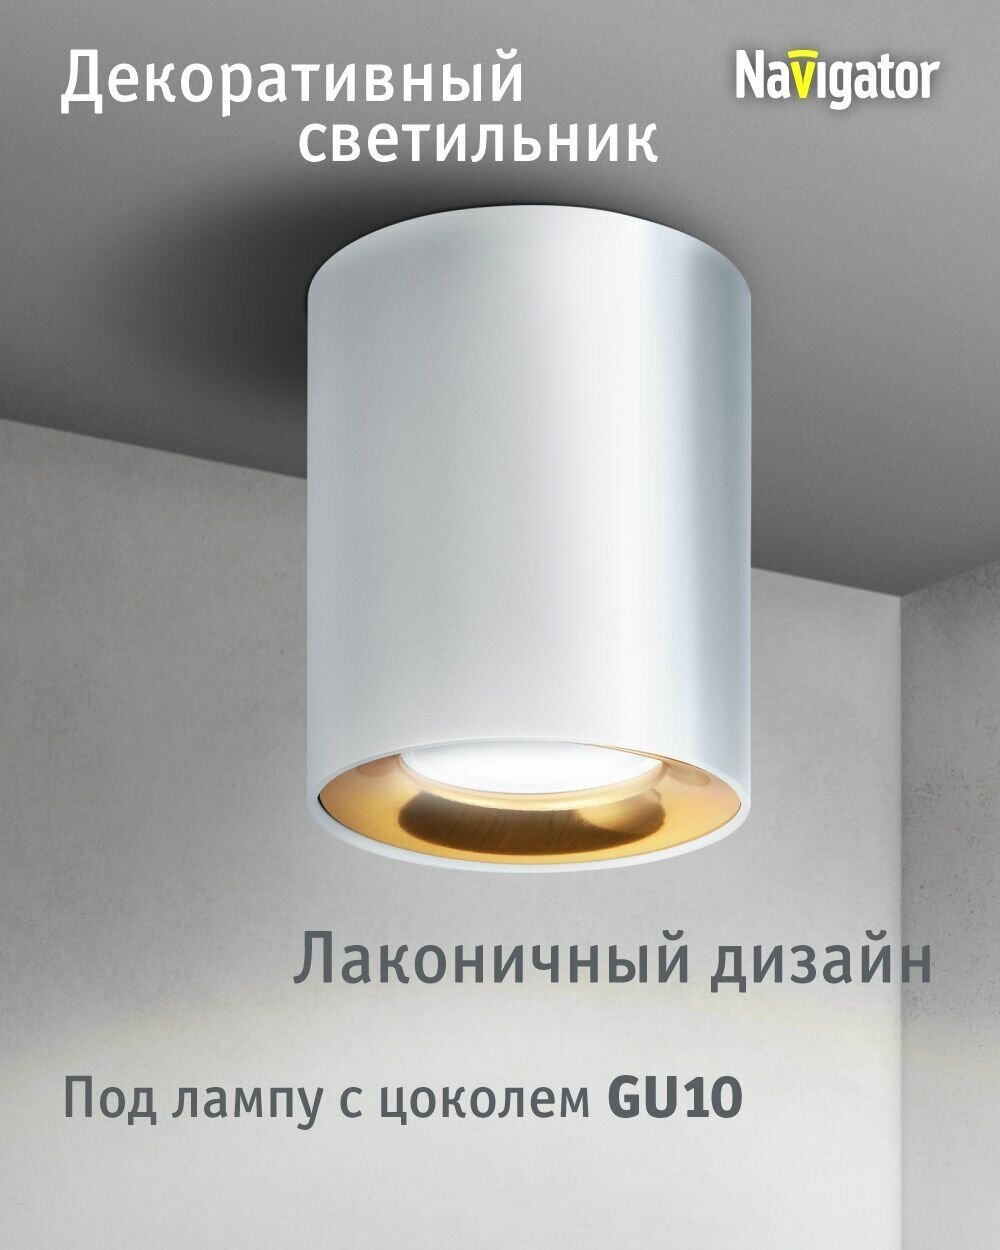 Декоративный светильник Navigator 93 329 накладной для ламп с цоколем GU10, белый/античное золото